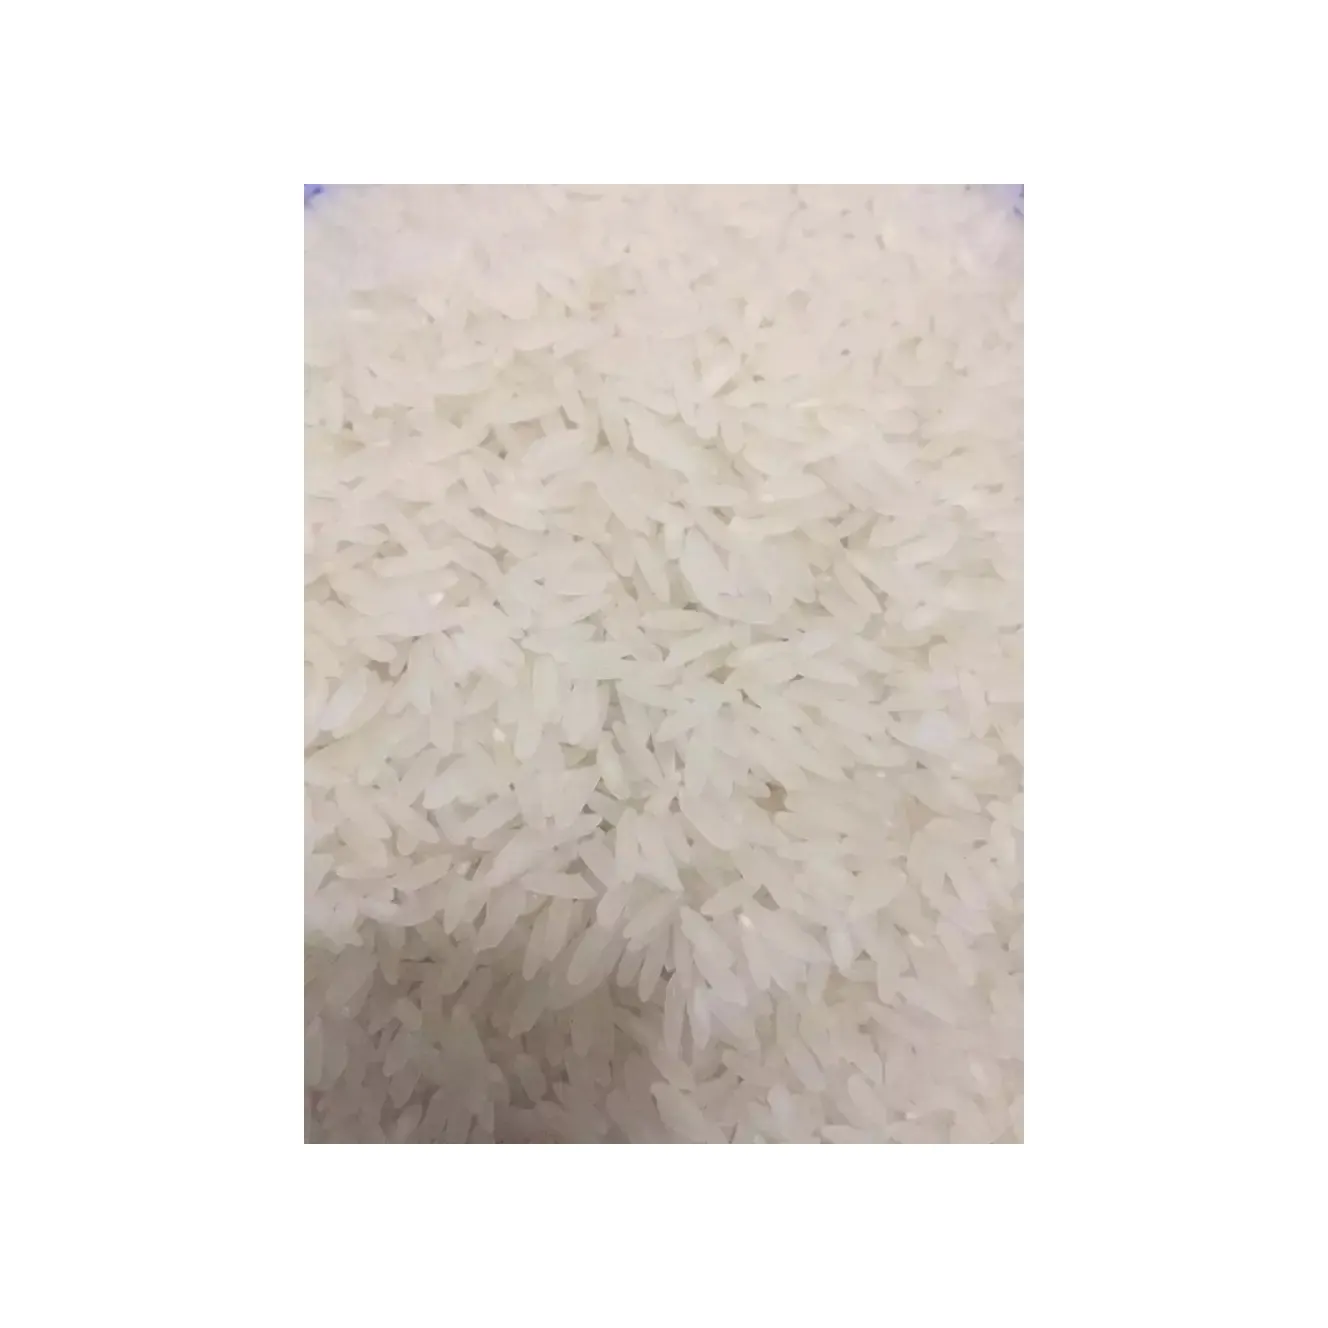 أرز فراخ مكسور بنسبة 5% بأعلى جودة وأرز بني طويل وأرز بسمتي بسعر منخفض في السوق وأفضل جودة بسعر الجملة للتوصيل في جميع أنحاء العالم